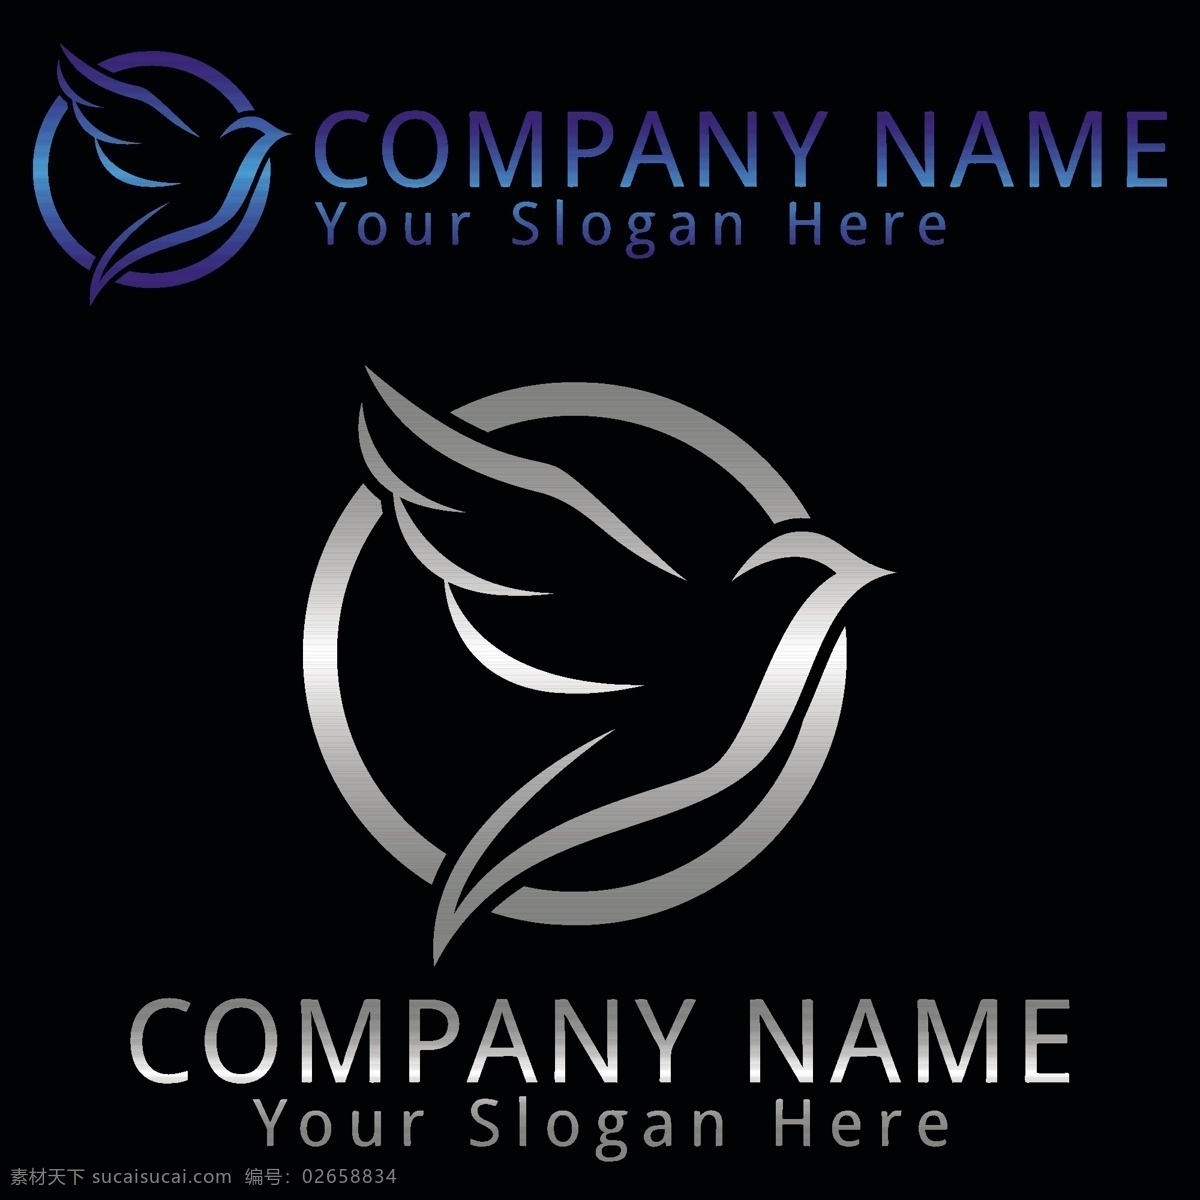 图标 鸟的标志 和平鸽 抽象标志符号 企业公司标志 logo设计 矢量 标志图标 其他图标